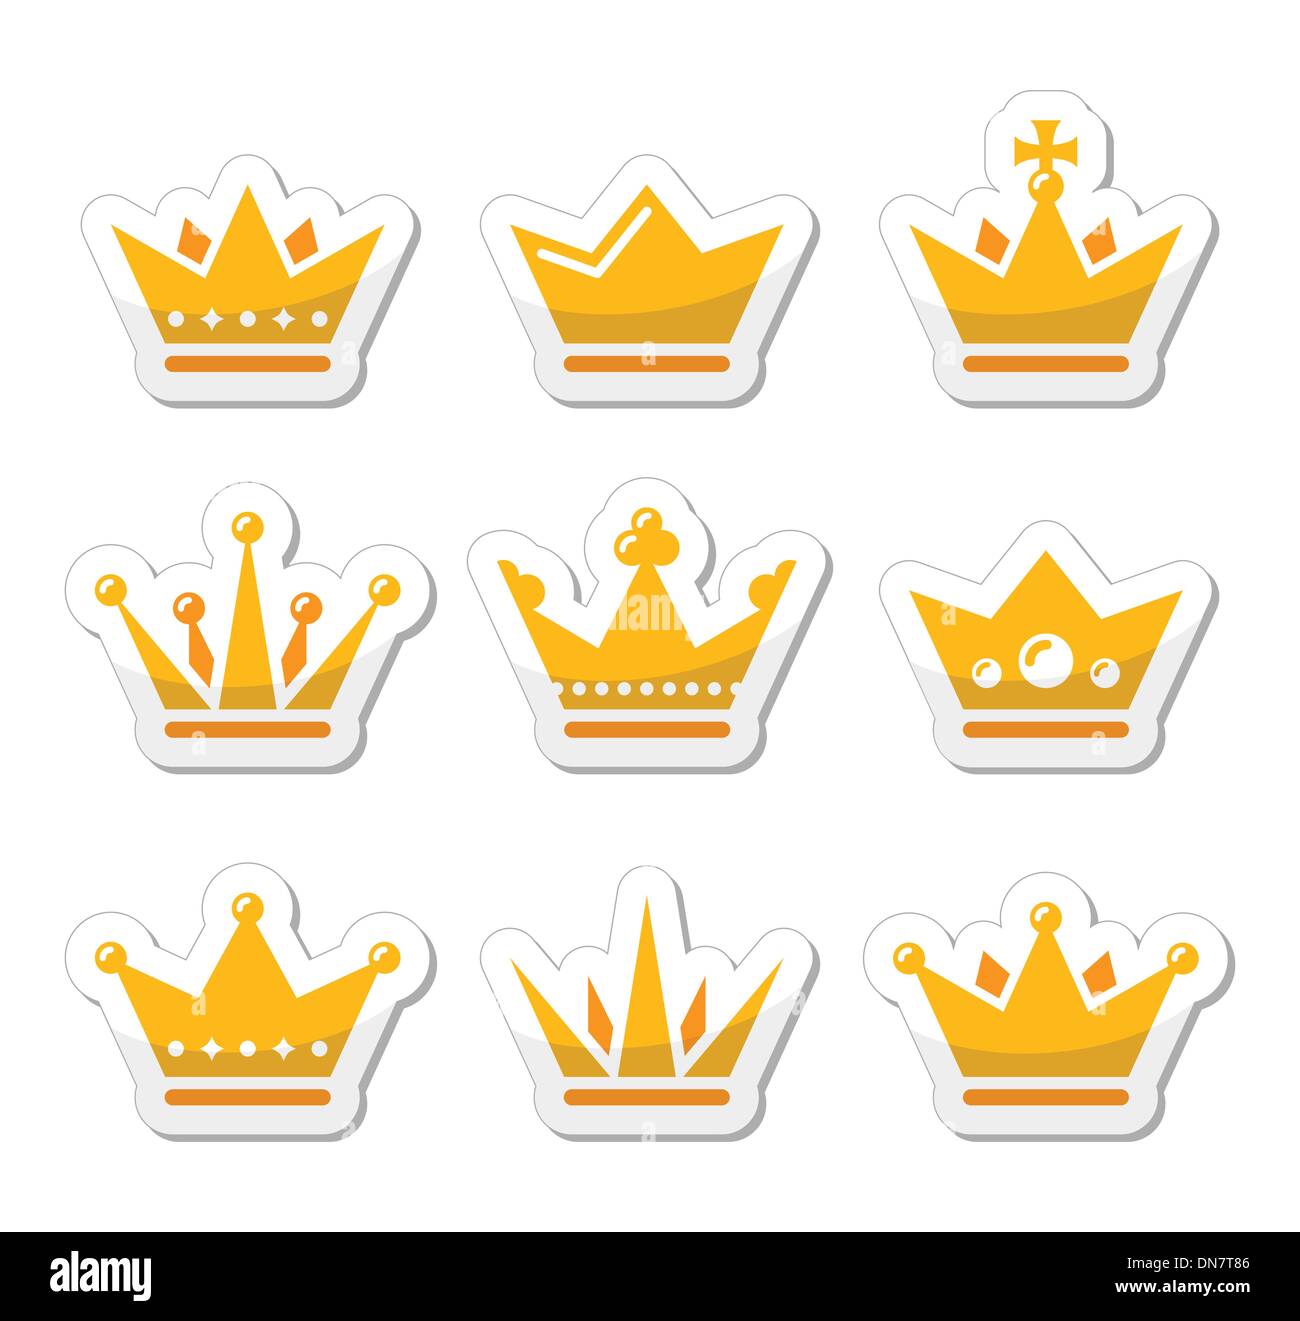 Corona, la familia real conjunto de iconos Ilustración del Vector